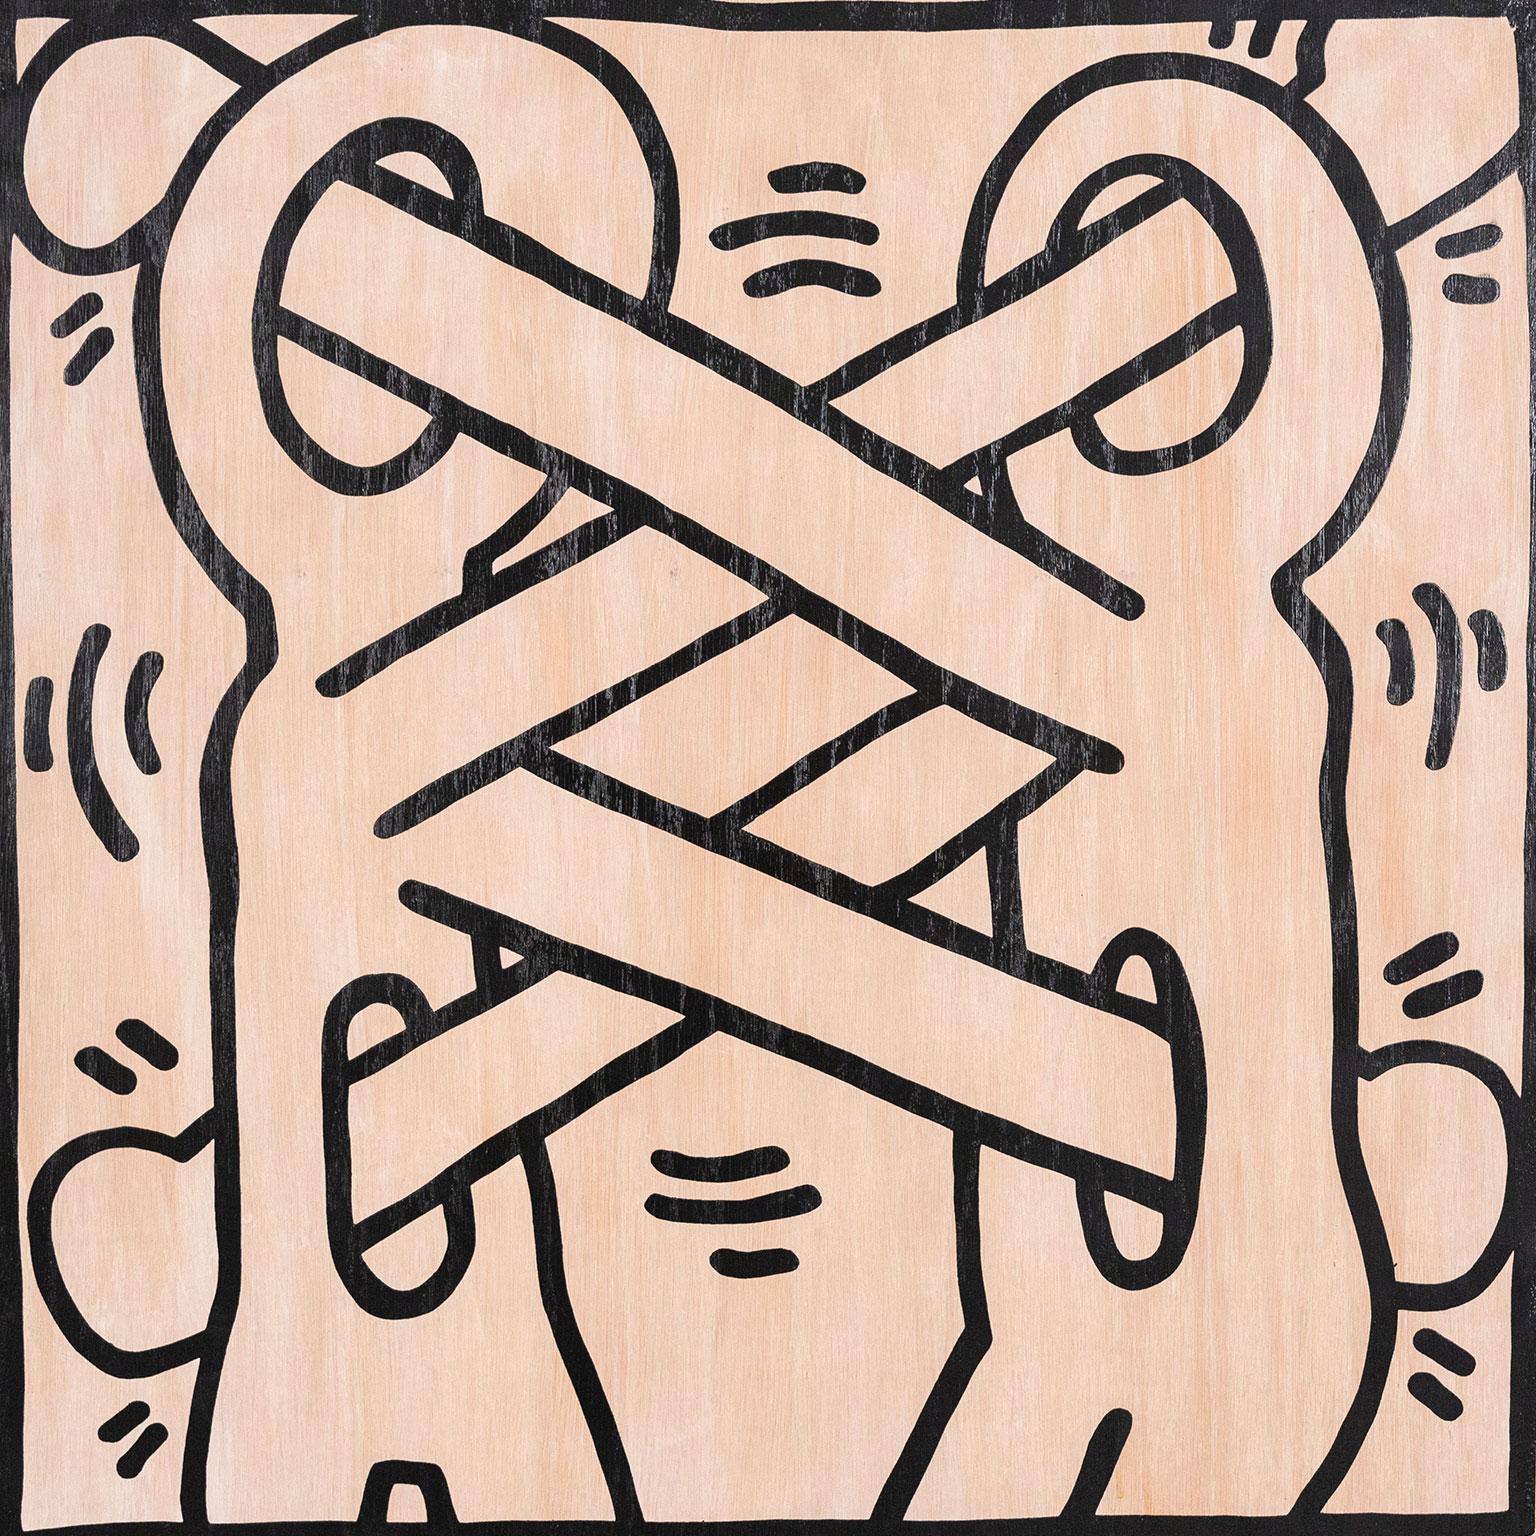 Keith Haring (1958-1990) est l'un des artistes (graffiti) les plus célèbres et les plus reconnus de tous les temps. Son imagerie emblématique a émergé sur les murs du métro de New York au début des années 1980, brisant la barrière entre le grand art